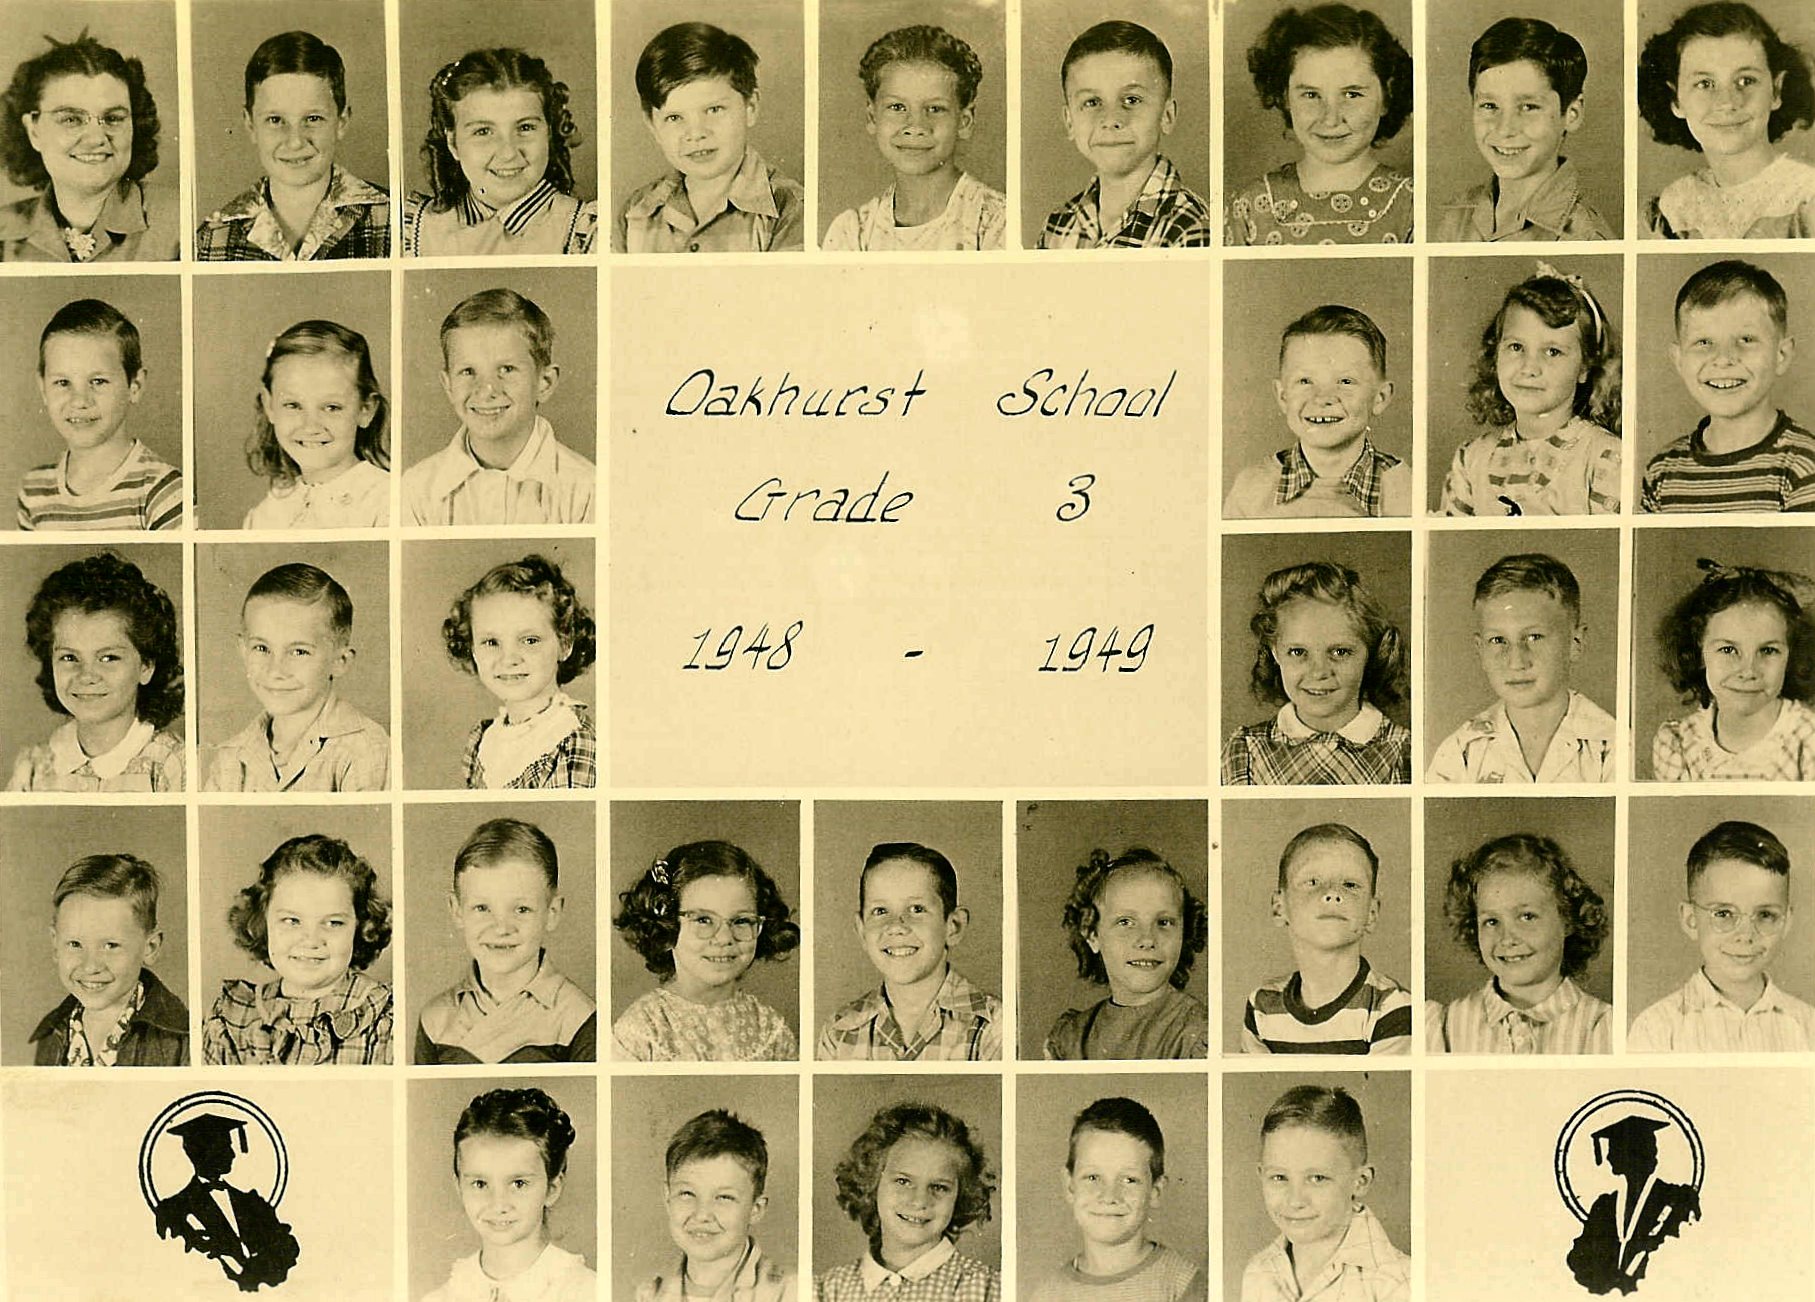 Oakhurst's 3rd grade class, 1948-49, HERE.